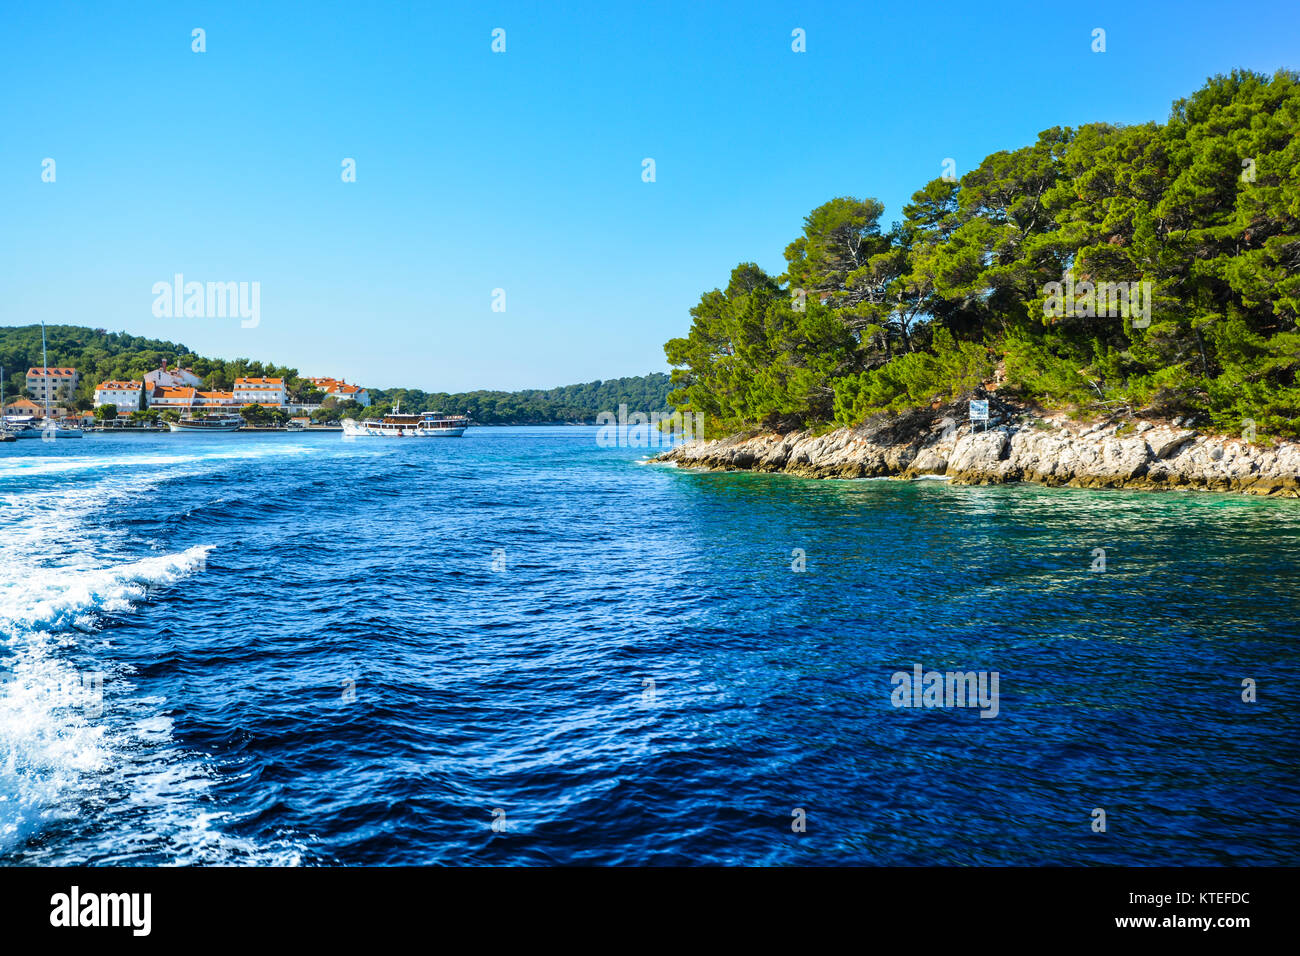 Küstenstadt, Boote und Inseln an der dalmatinischen Küste der Adria in der Nähe von Dubrovnik, Kroatien Stockfoto